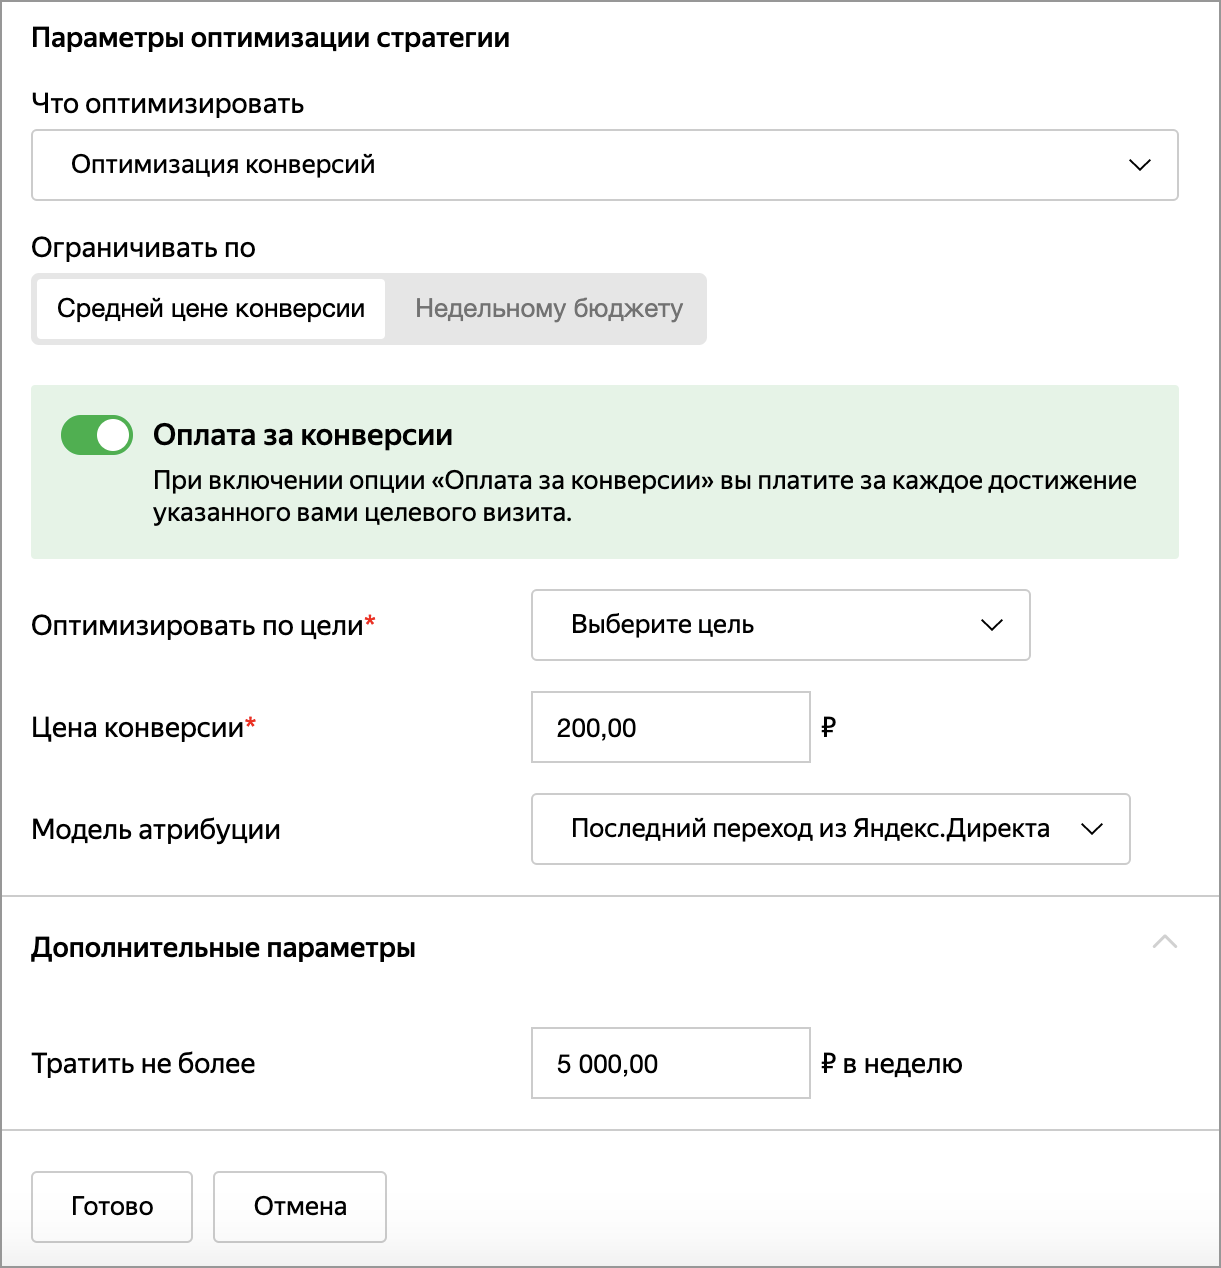 Оплата за конверсии в Яндекс.Директе